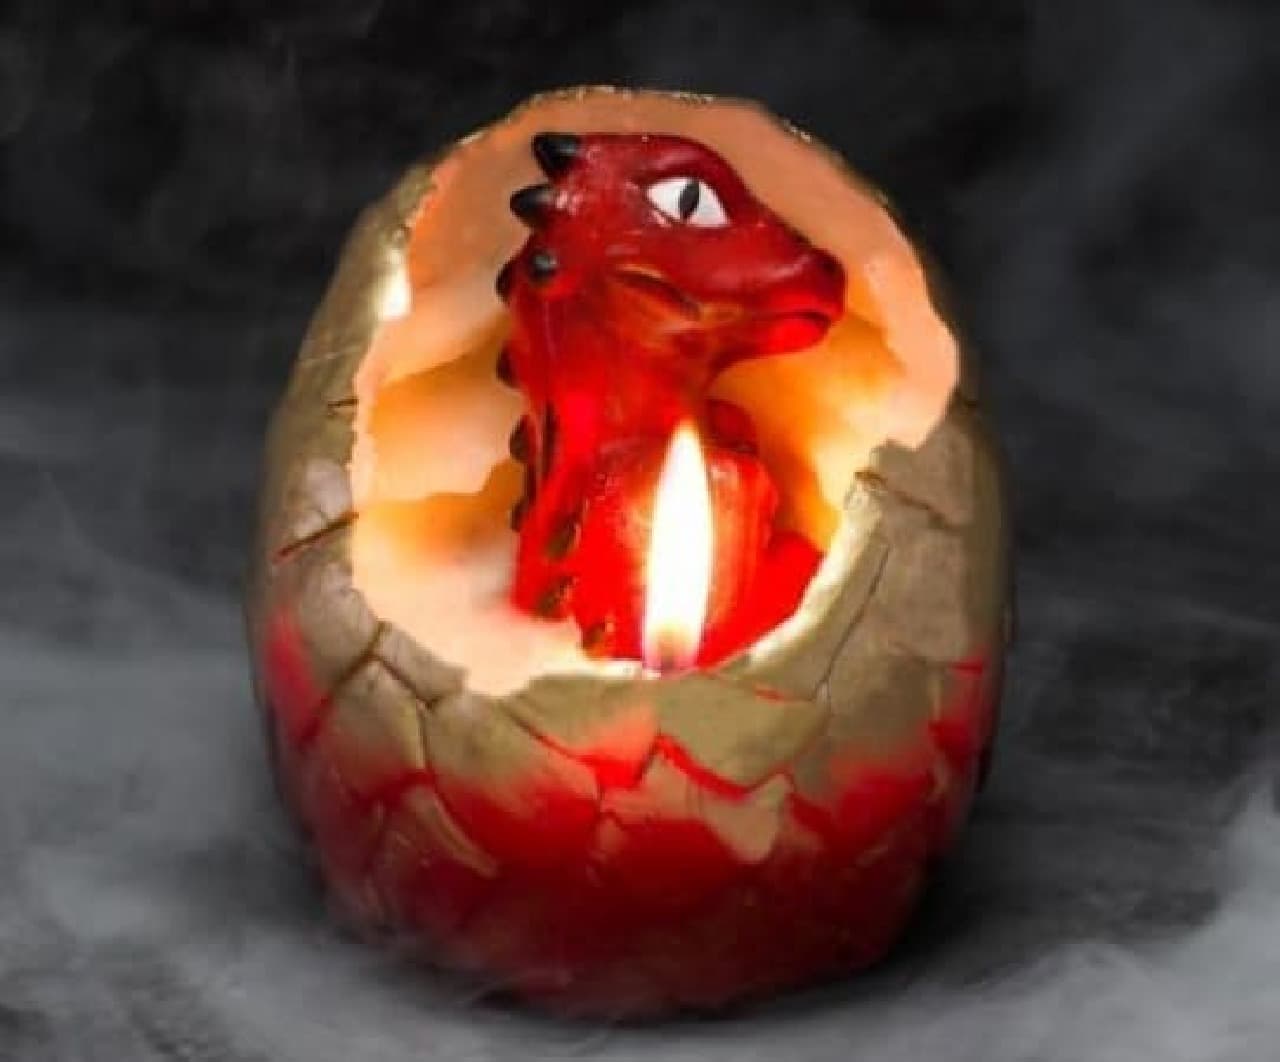 Dragon egg candle